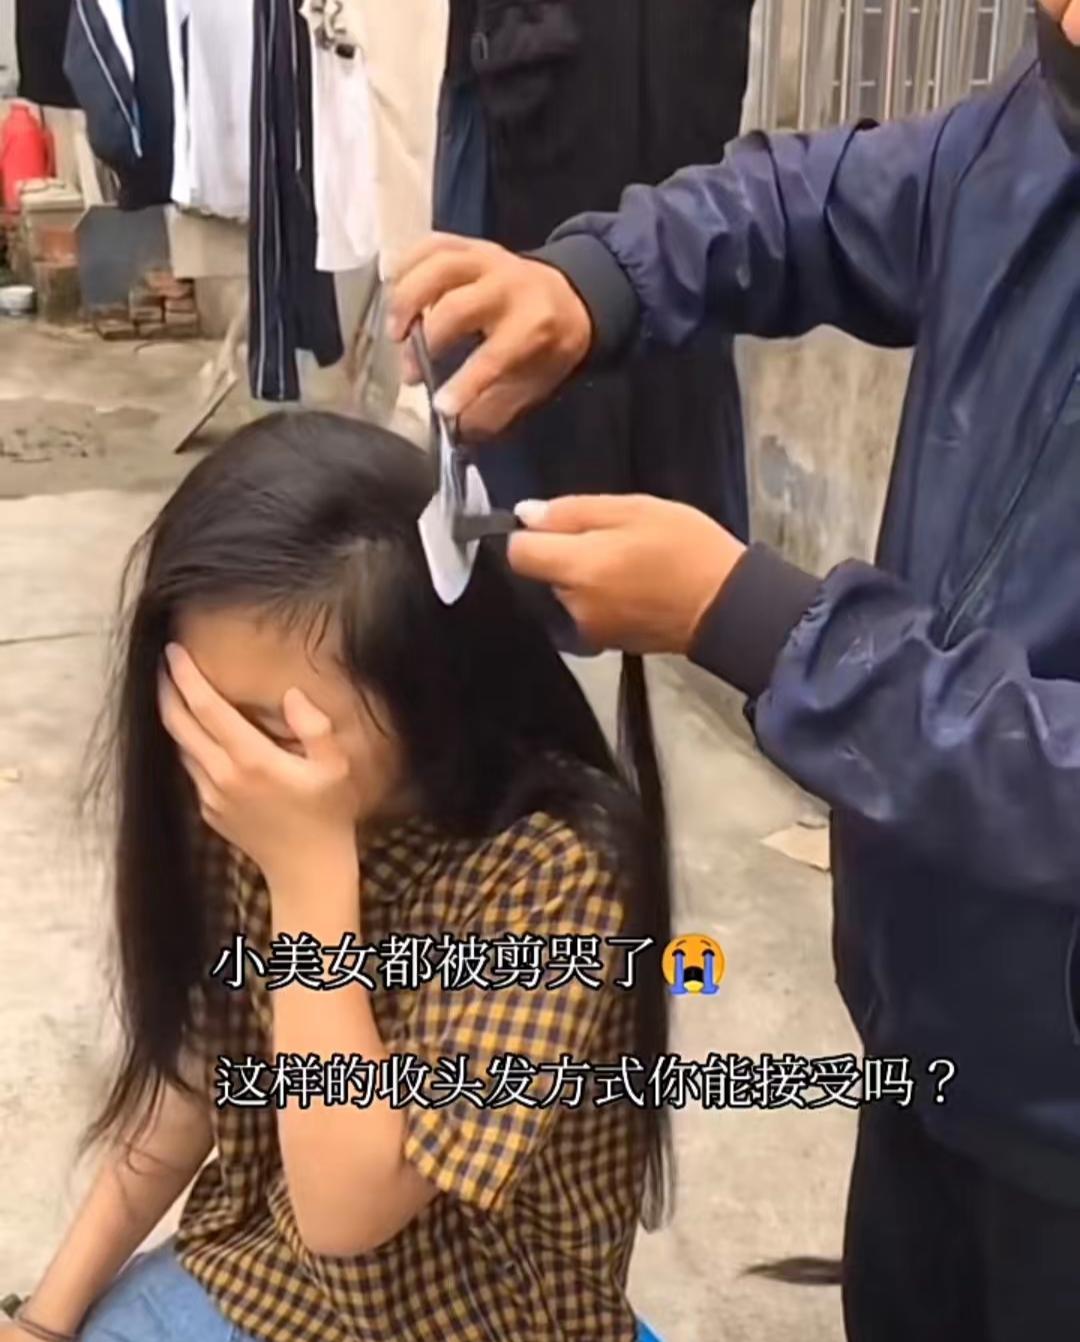 Trung Quốc có thành phố mệnh danh thủ phủ của những bộ tóc giả - nơi những cô gái nông thôn bán tóc trở thành truyền thống - Ảnh 1.